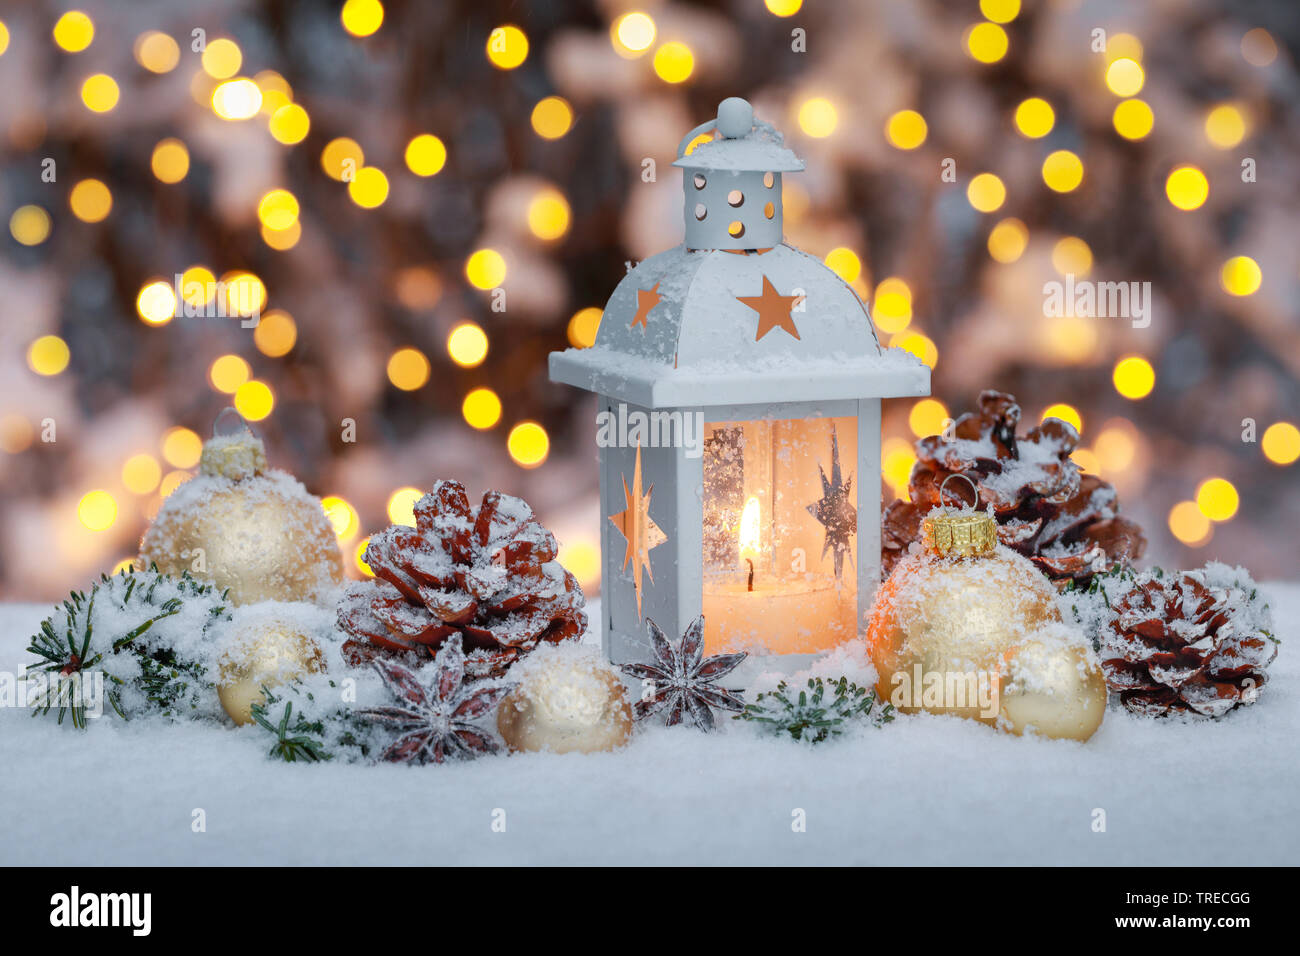 lantern with christmasdecoration outside, Switzerland Stock Photo